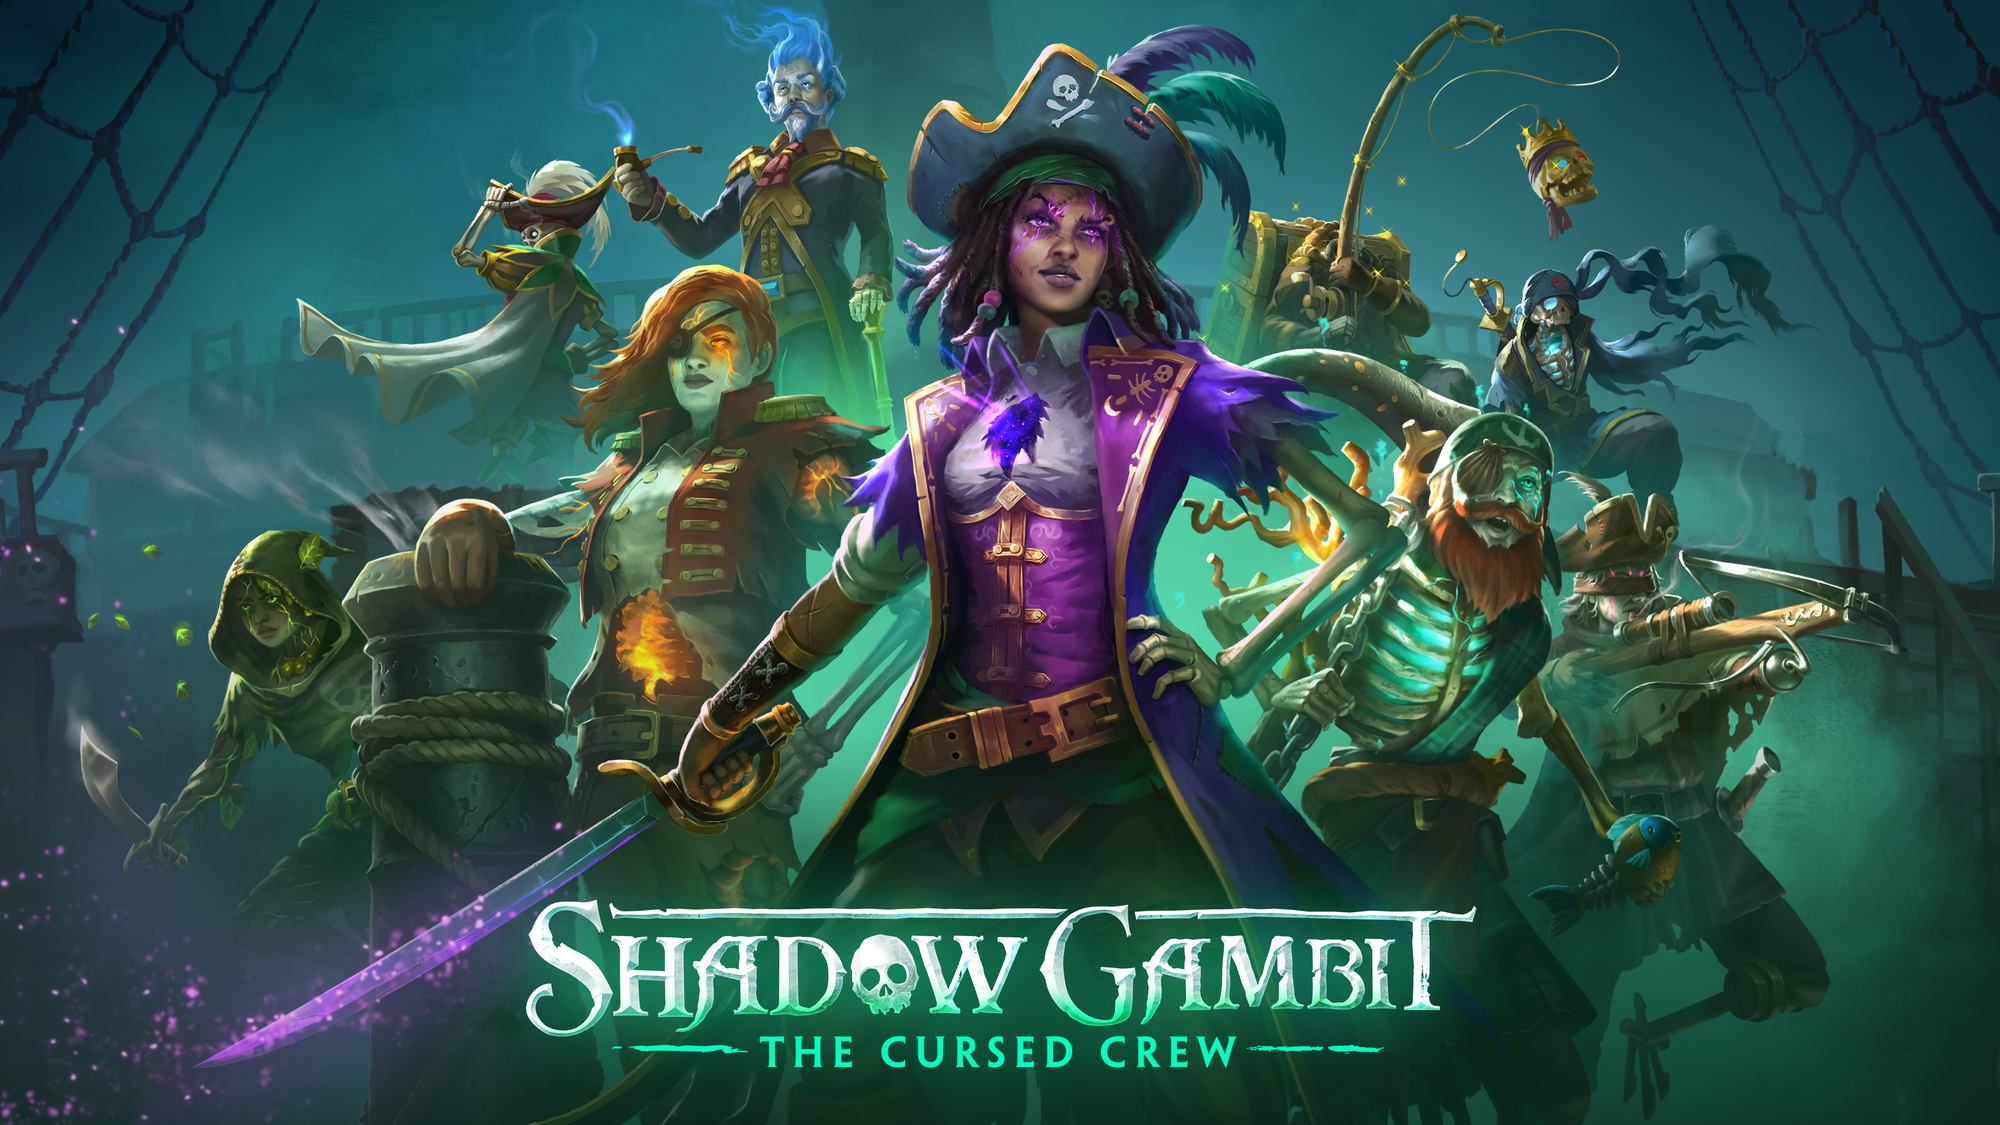 blog feature秘宝を求めて呪われたカリブ海へ漕ぎ出せ『Shadow Gambit: カリブの呪い』プレイレポート